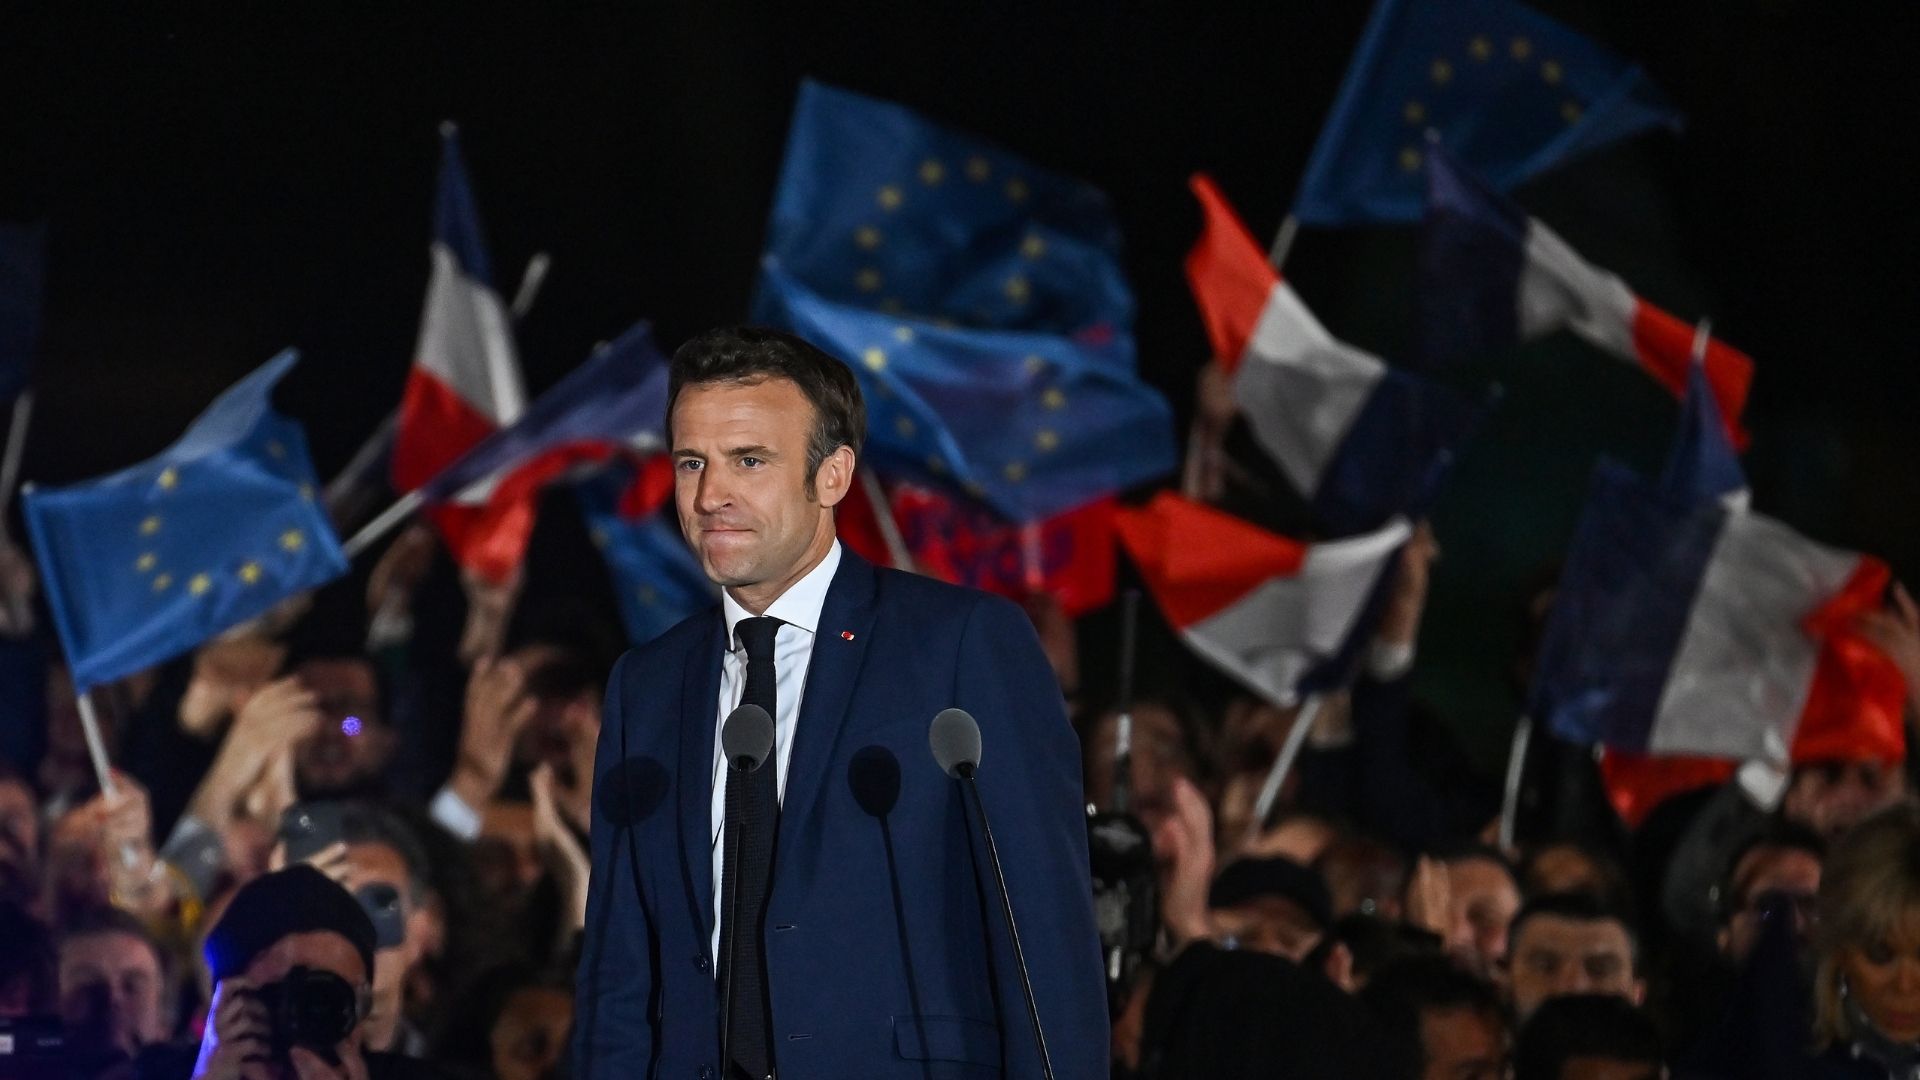  Avec Emmanuel Macron, la future politique écologique demeure incertaine